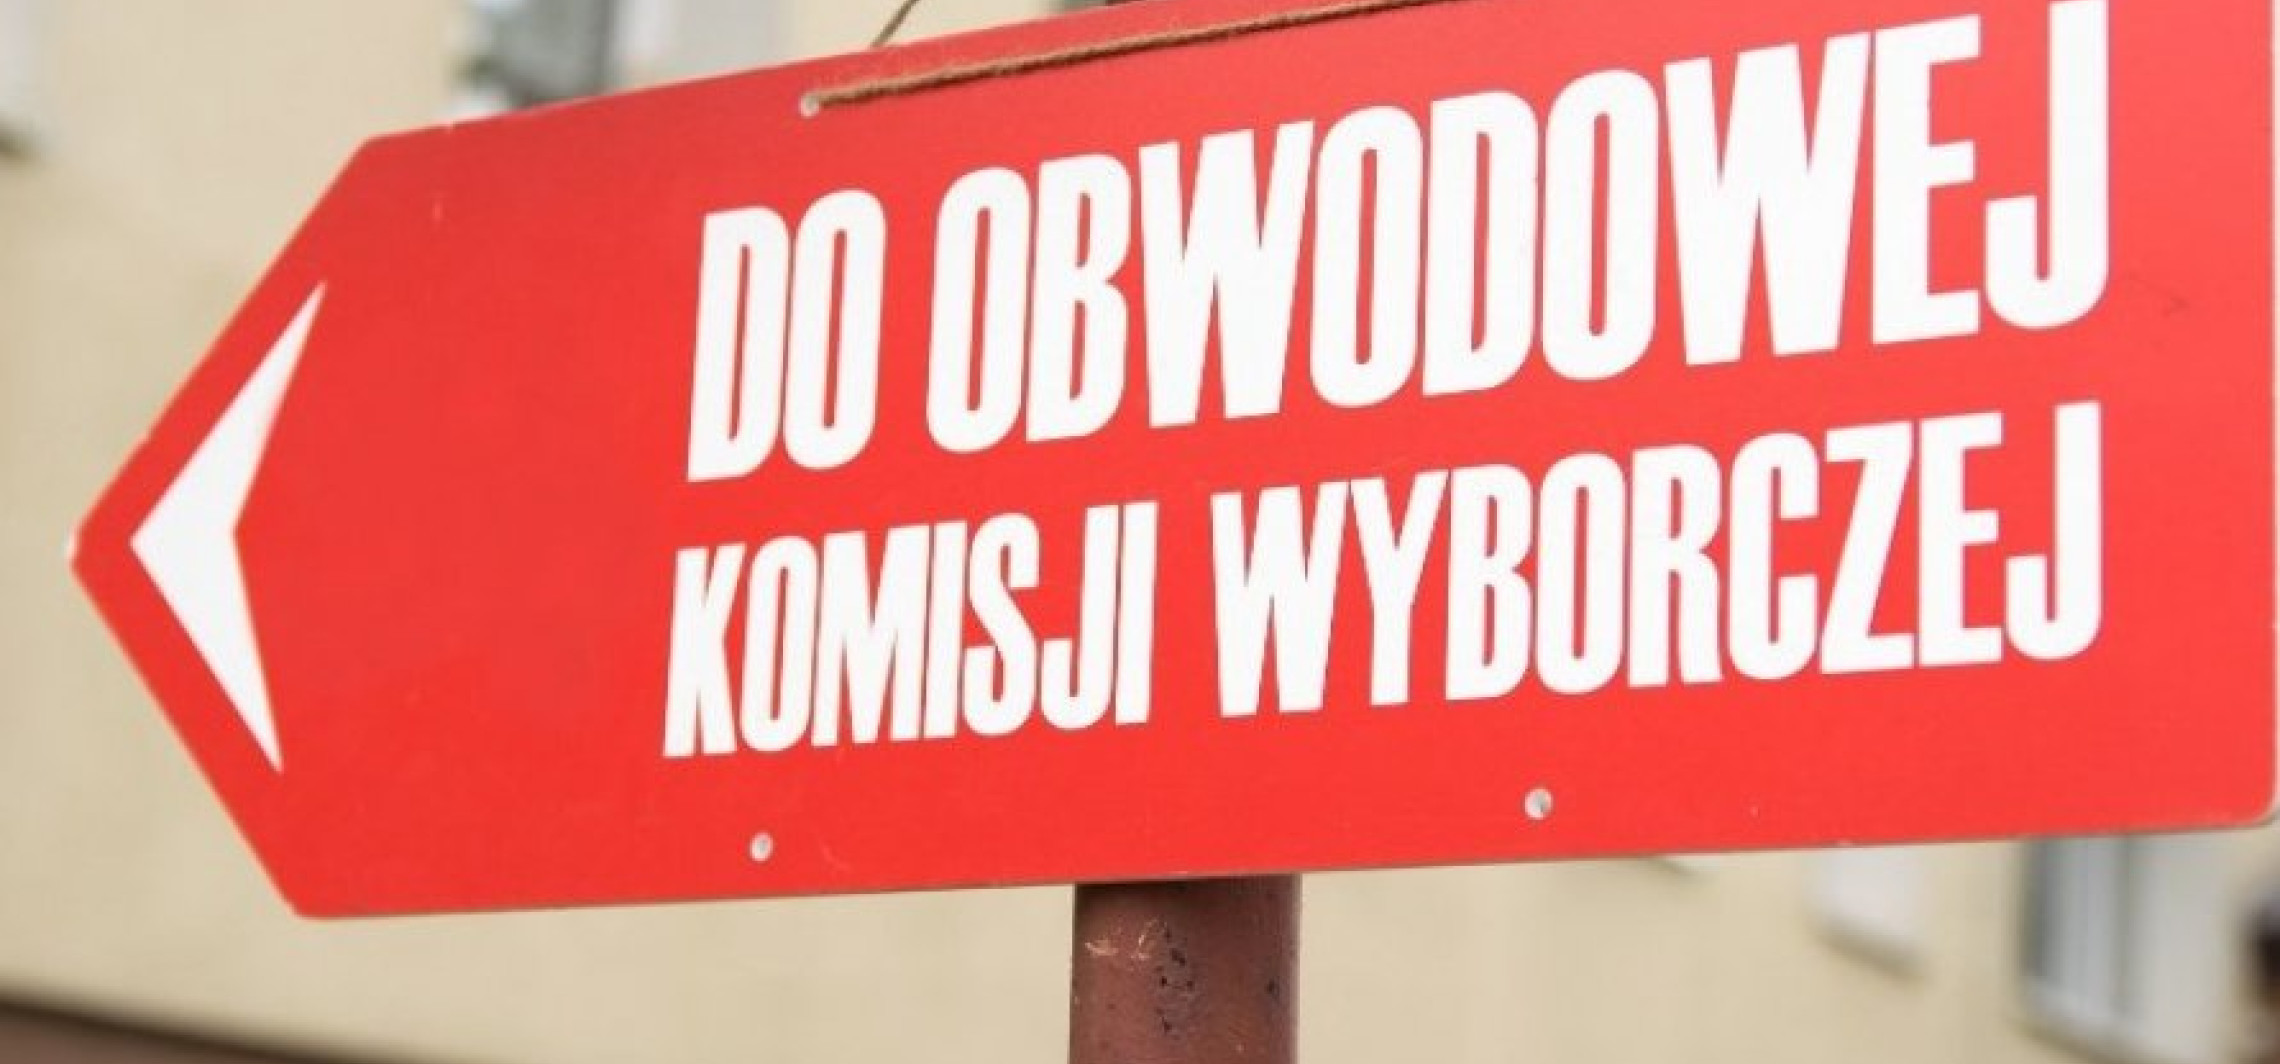 Inowrocław - Posiedzenia komisji wyborczych. Urząd wyśle sms-y